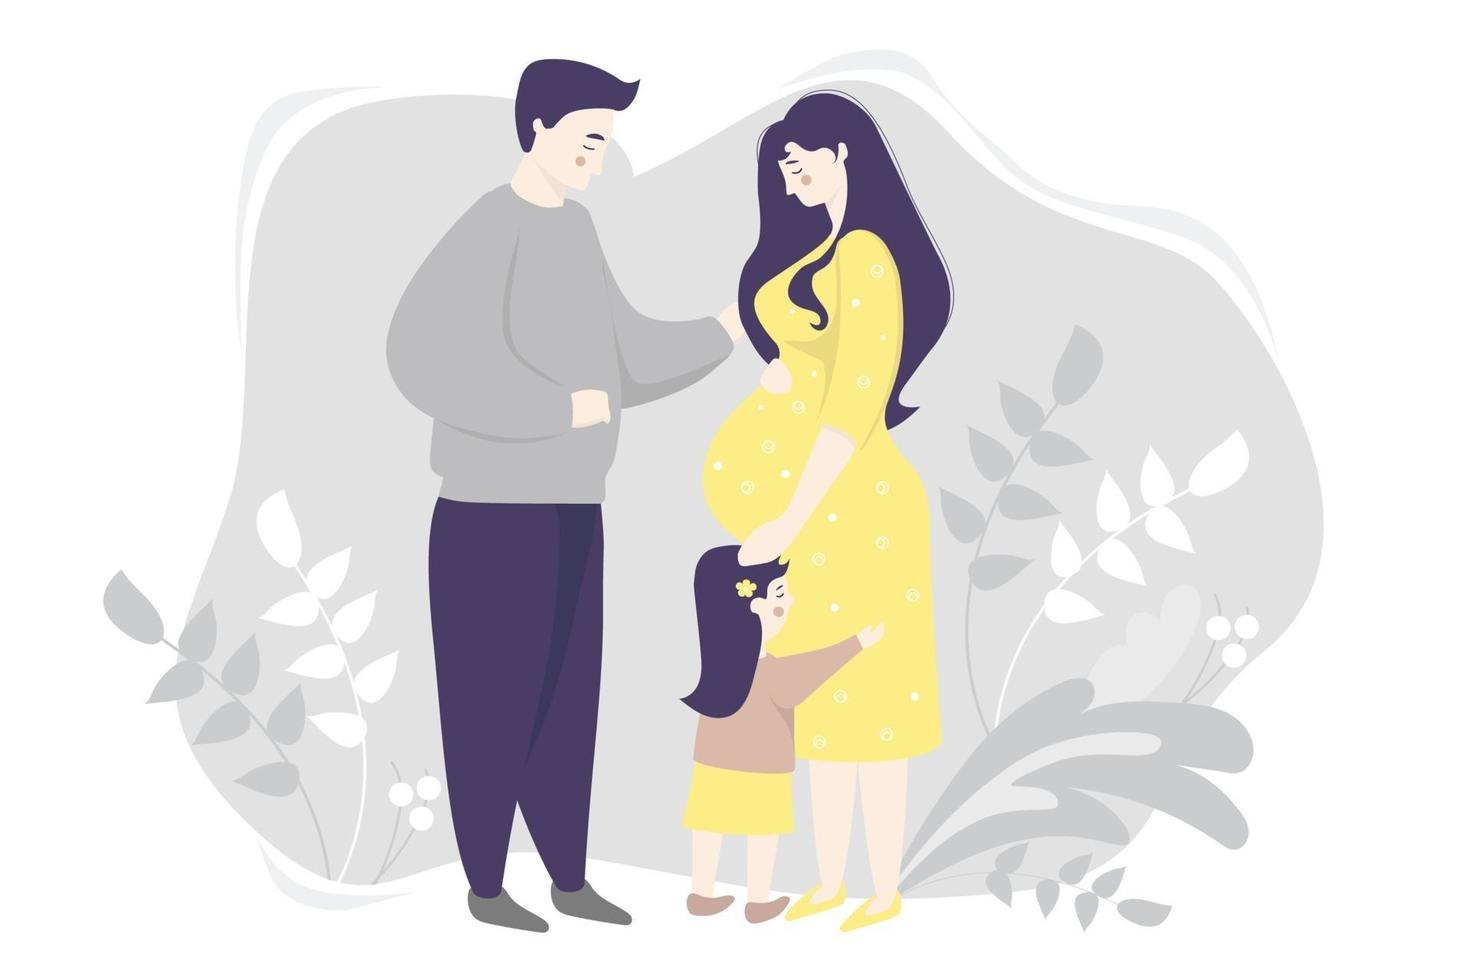 moederschap. familie vector plat - gelukkige zwangere vrouw in een gele jurk, knuffelt zachtjes haar buik. naast haar staat een dochtertje en een echtgenoot op een grijze achtergrond met planten. vector illustratie